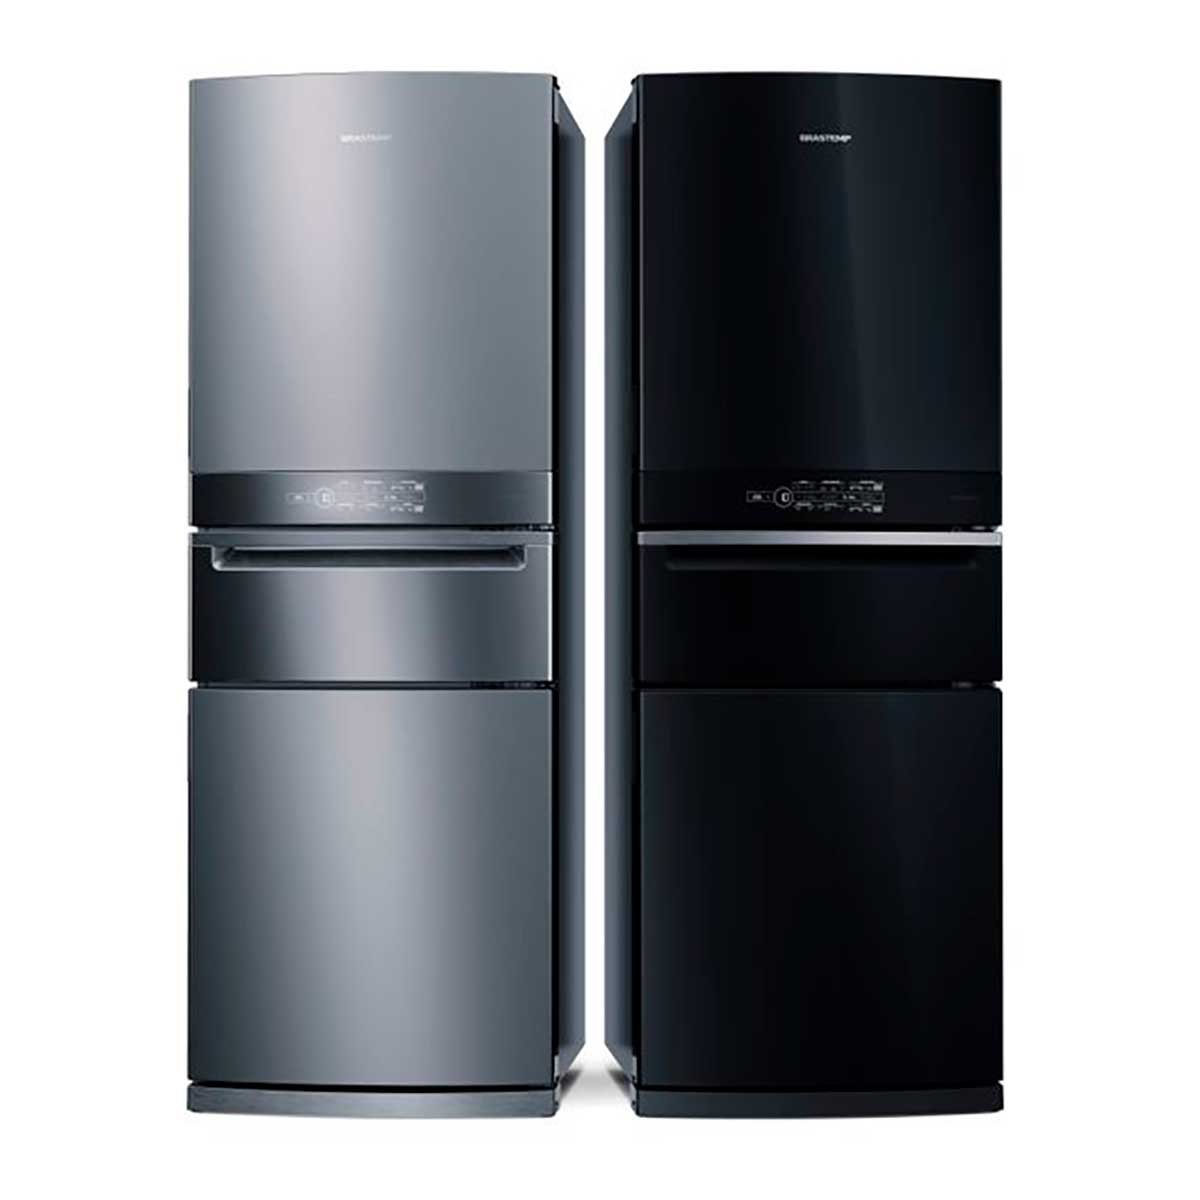 refrigerador-brastemp-frost-free-3-portas-inverse-bry59bk-419-l-inox-220v-16.jpg